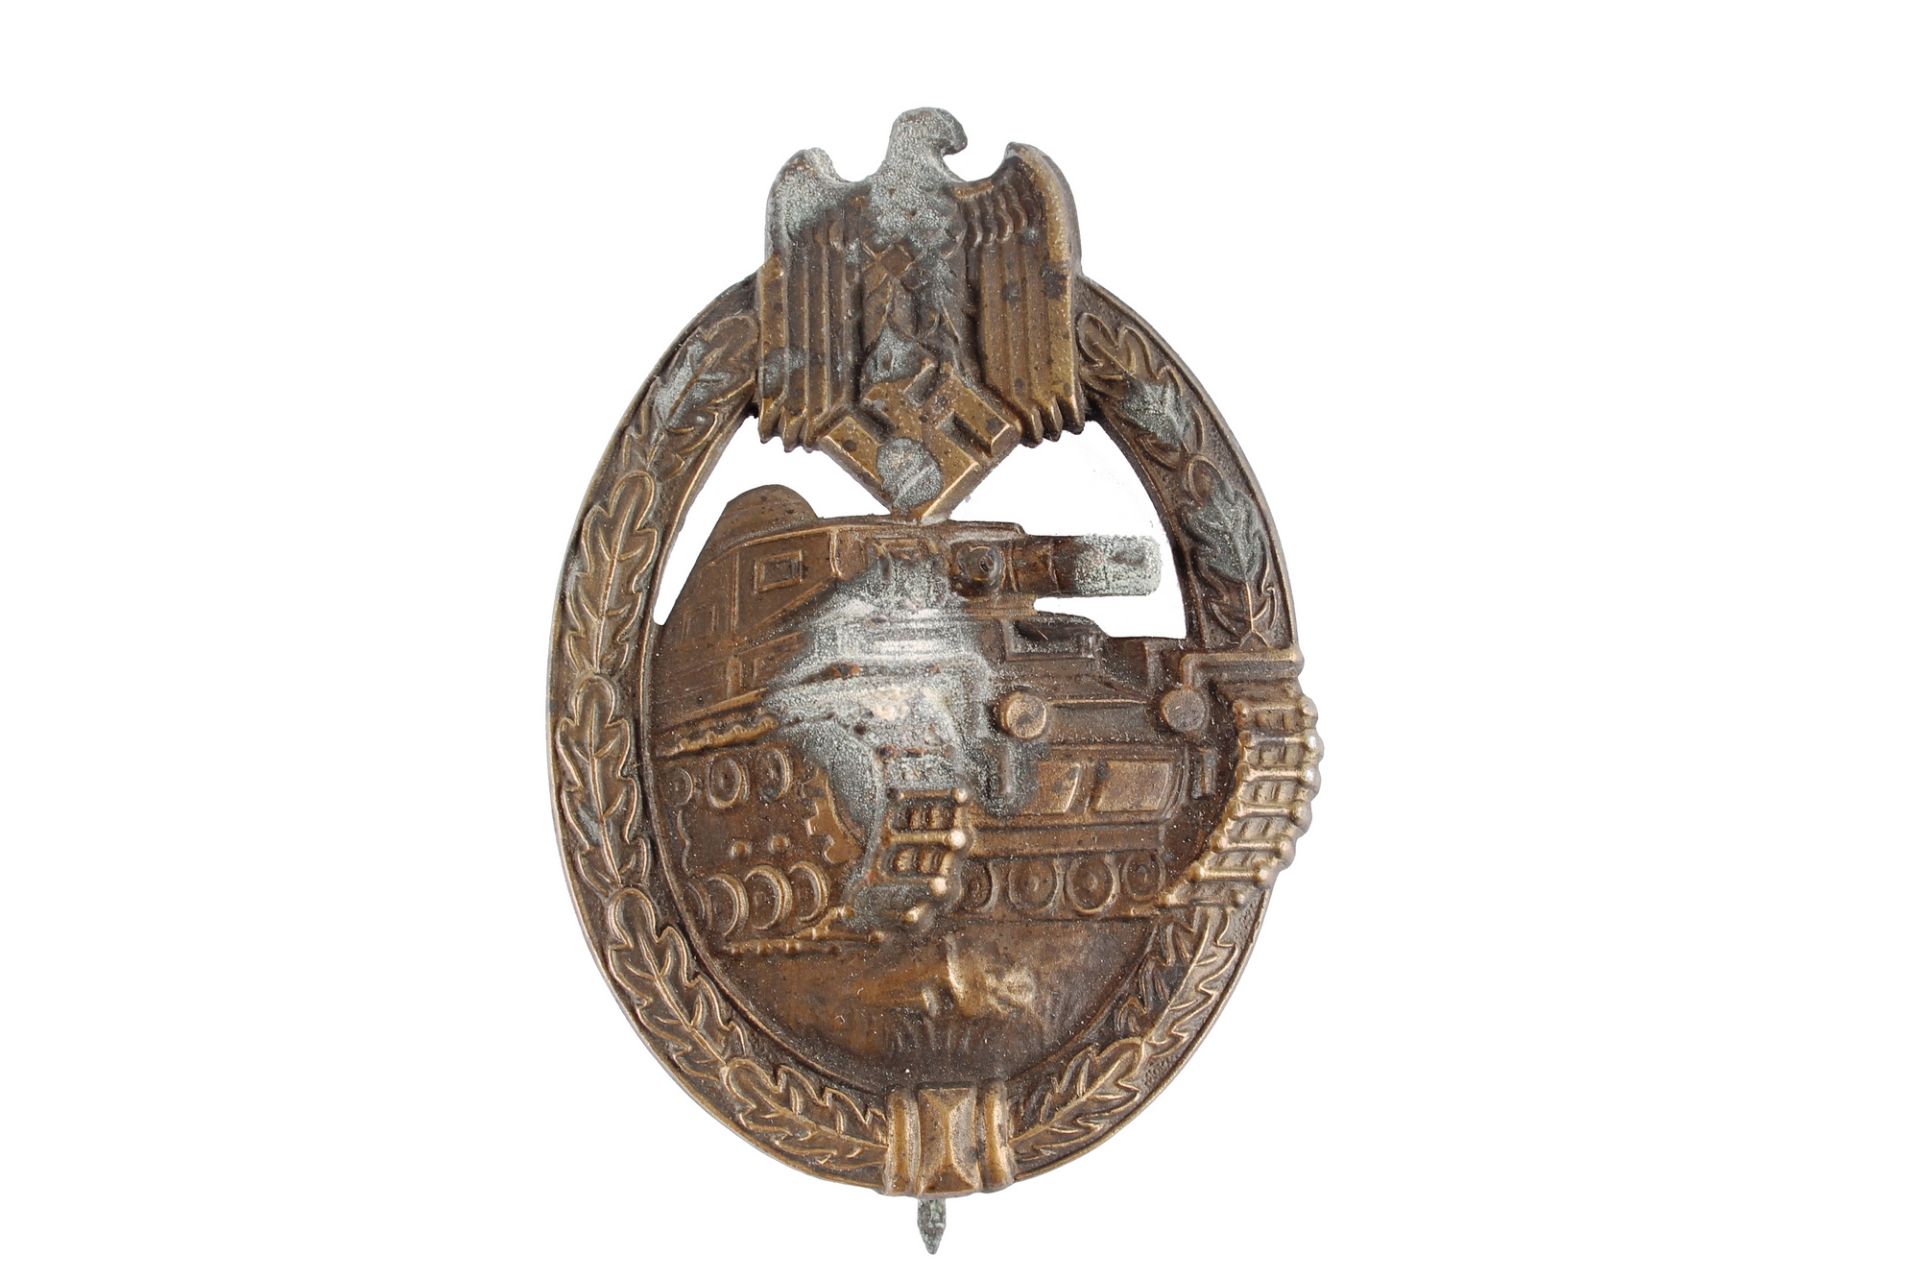 Panzerkampfabzeichen in Bronze, 3. Reich, tank assault badge 3rd Reich, - Image 2 of 3